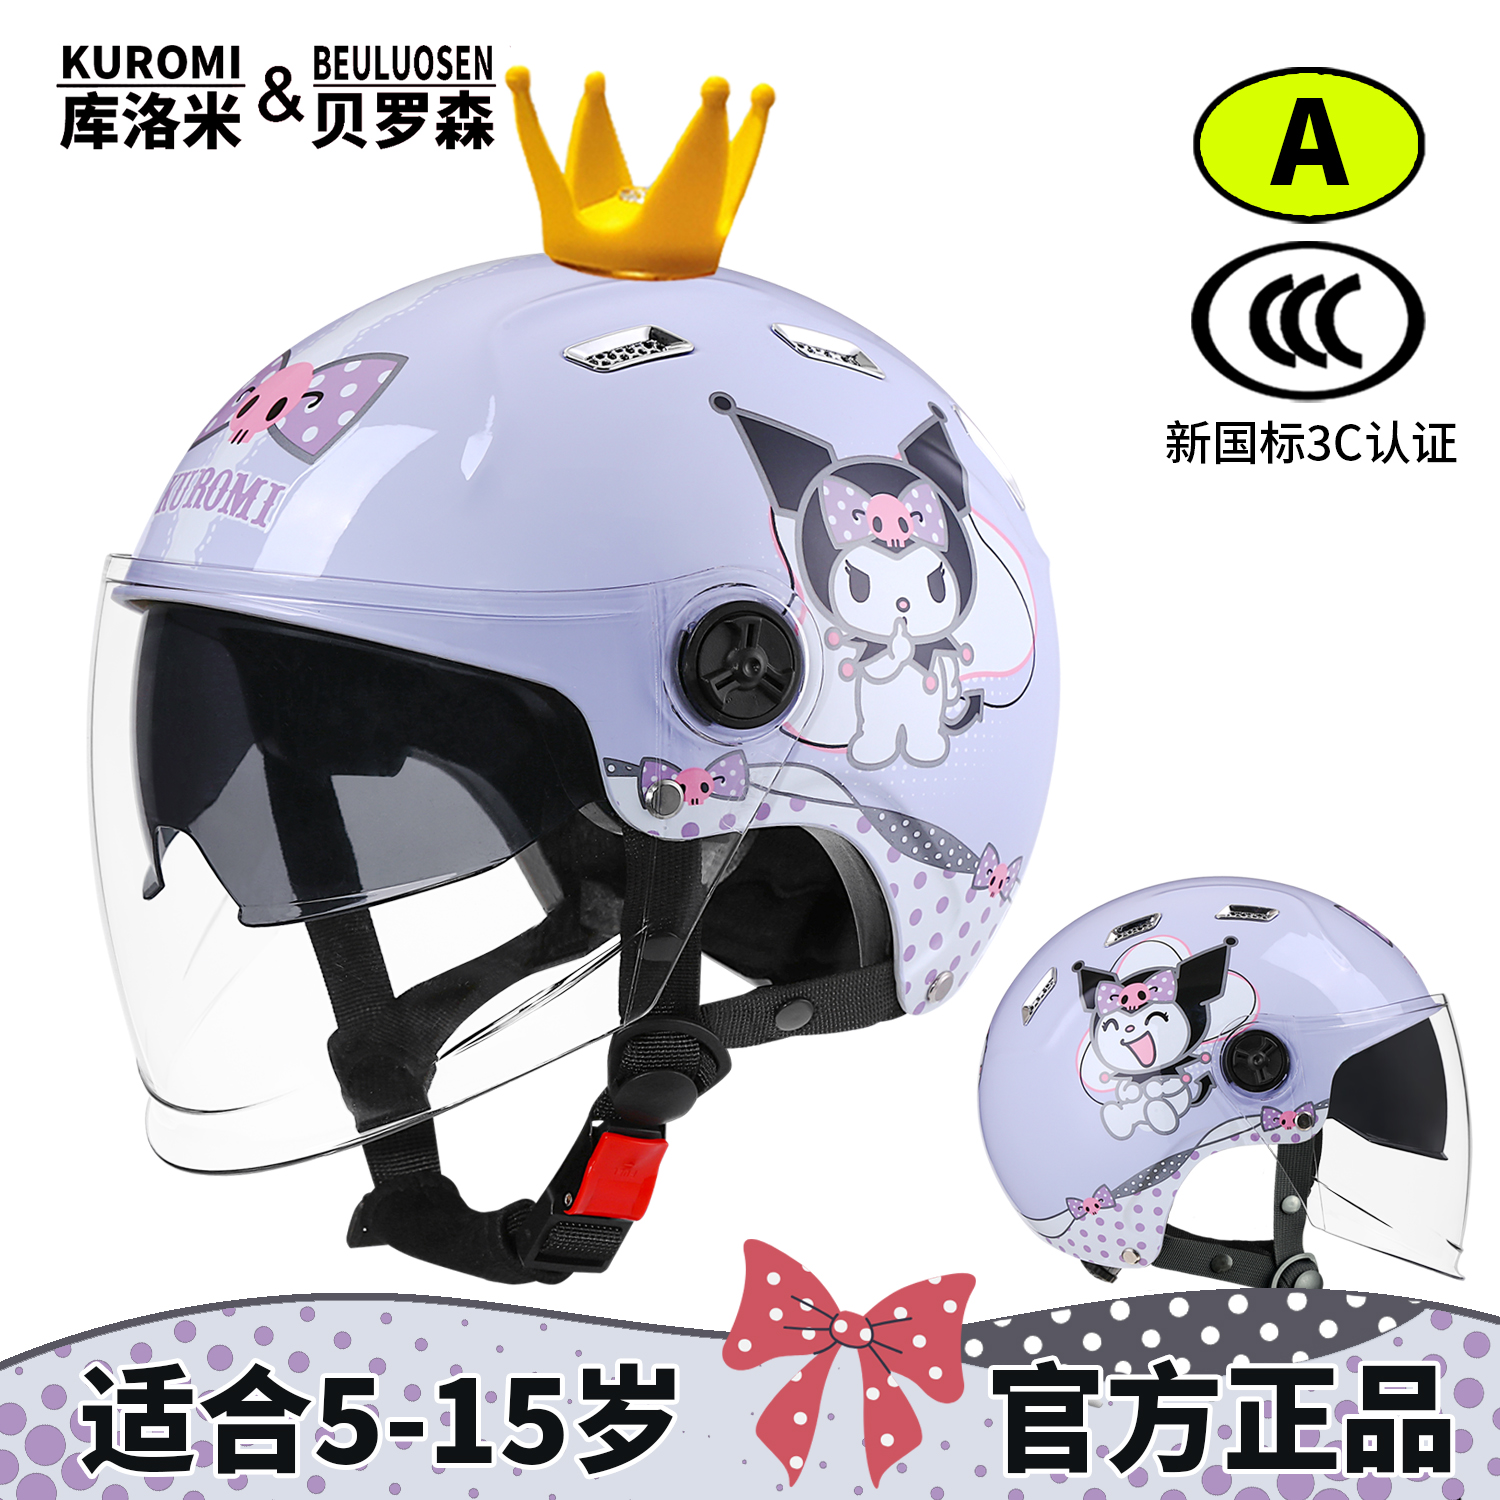 库洛米儿童头盔女孩3c认证四季款电动车安全头盔6一12岁摩托车帽